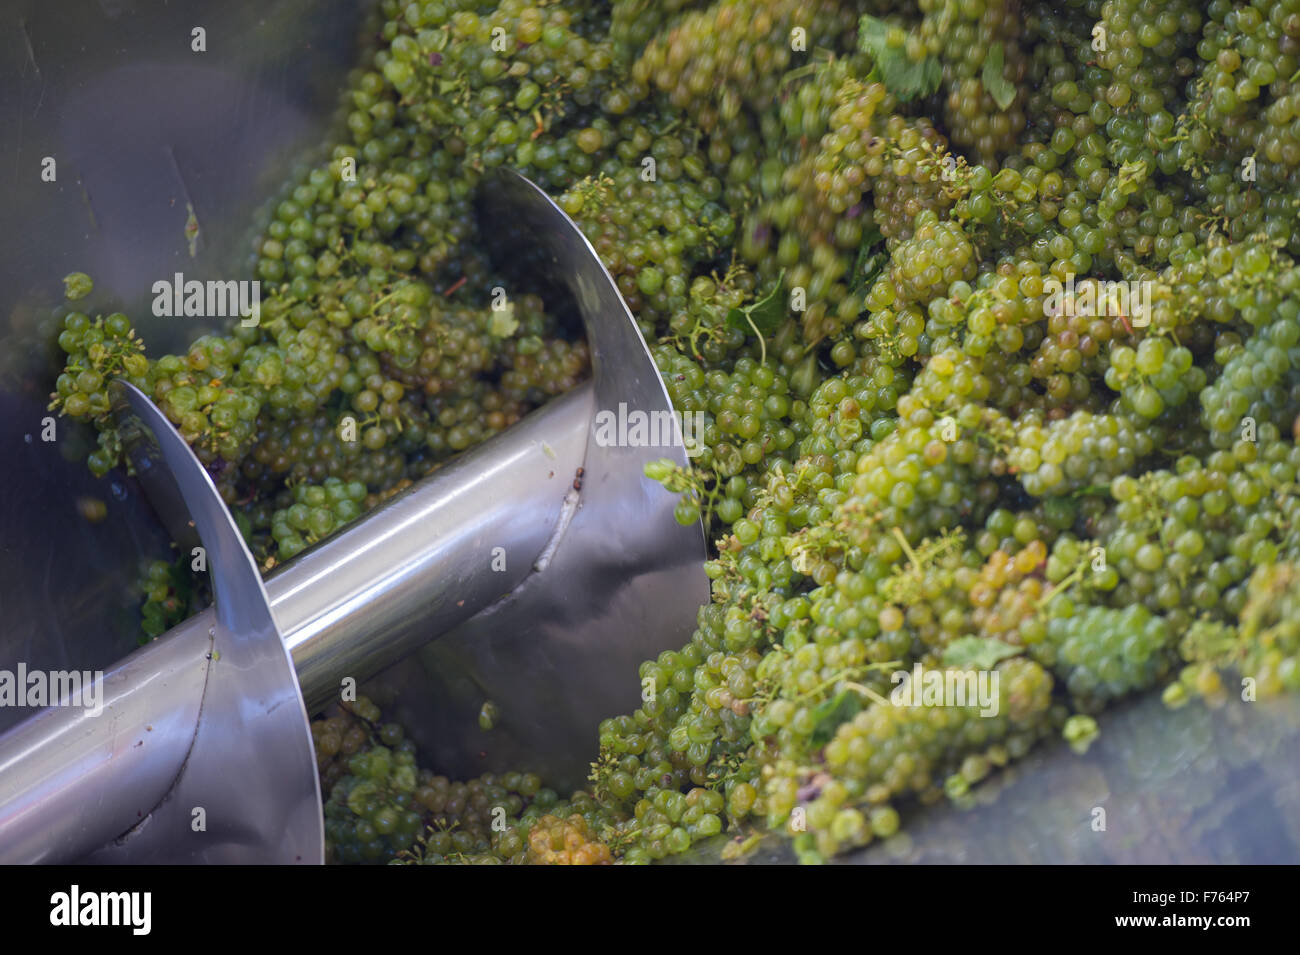 Südafrika - Prozess der Trauben in Wein gemacht Stockfoto